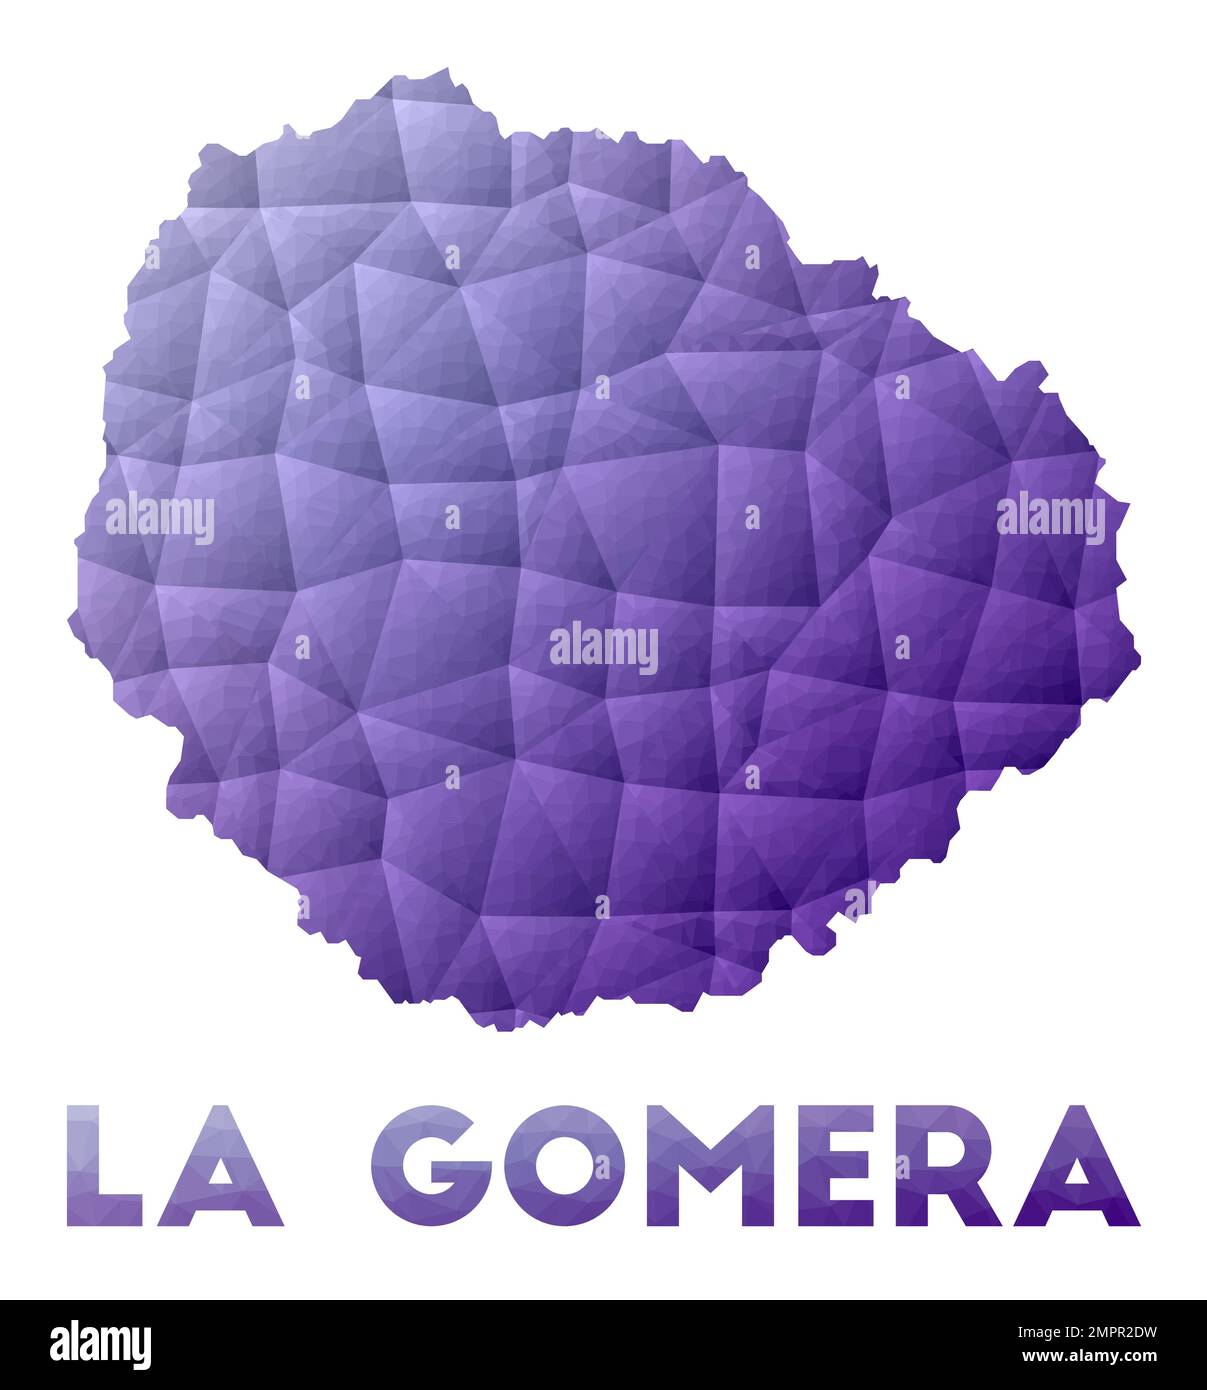 Karte von La Gomera. Niedrige Poly-Darstellung der Insel. Lilafarbenes geometrisches Design. Darstellung des polygonalen Vektors. Stock Vektor